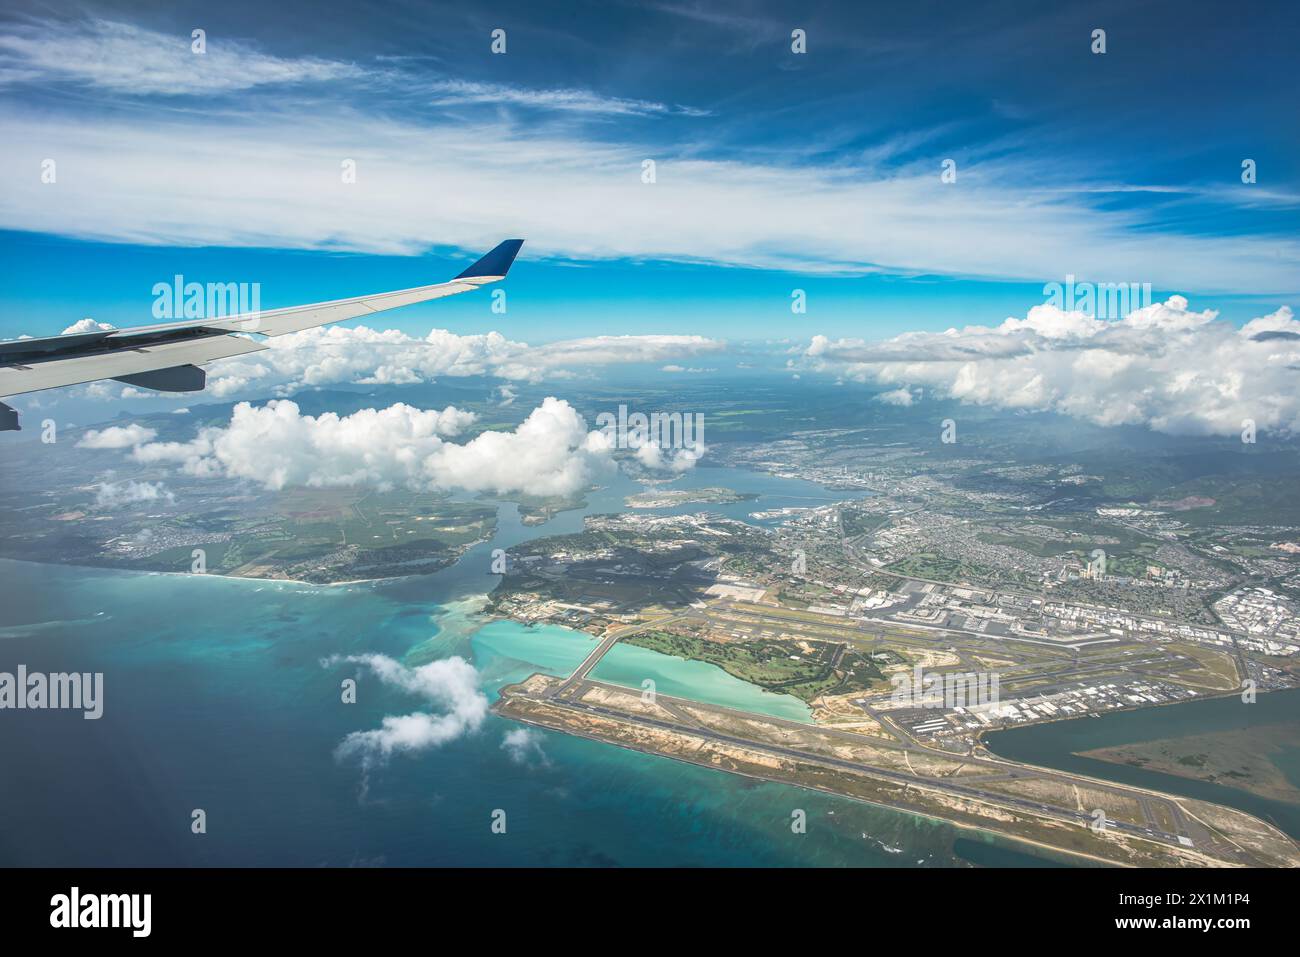 'Au-dessus des horizons : une vue aérienne capture Oahu, Hawaï, avec l'aéroport en dessous, encadré par des nuages gonflés, une vaste étendue de ciel bleu, et le di Banque D'Images